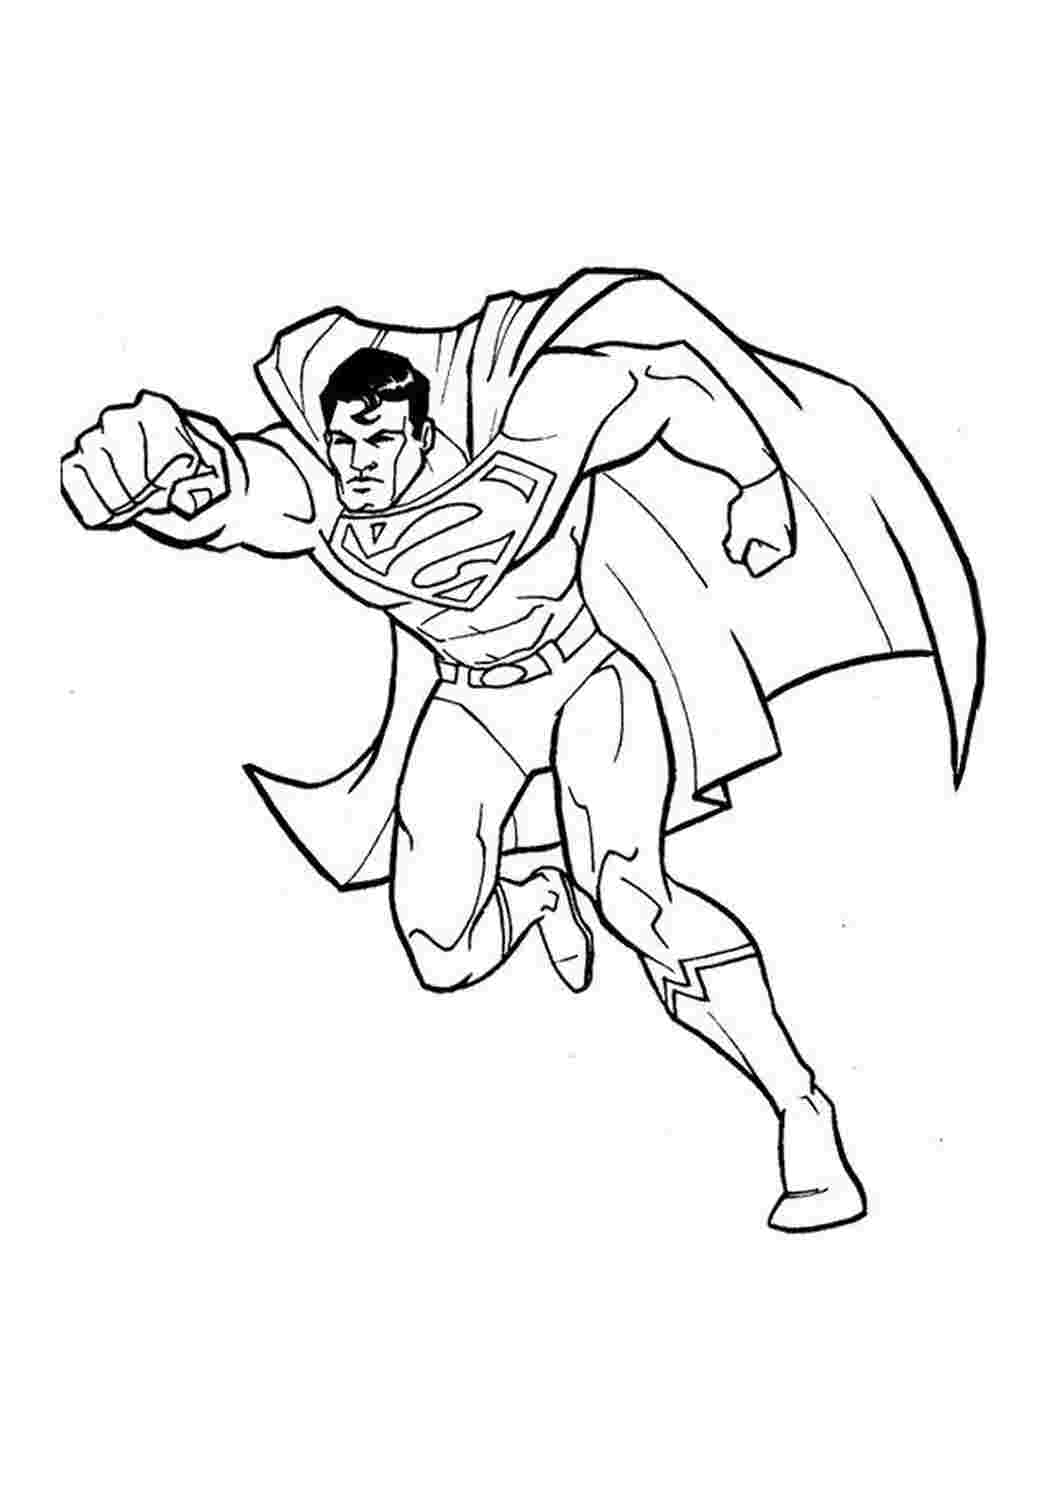 Раскраски картинки на рабочий стол онлайн Супермен Раскраски для мальчиков